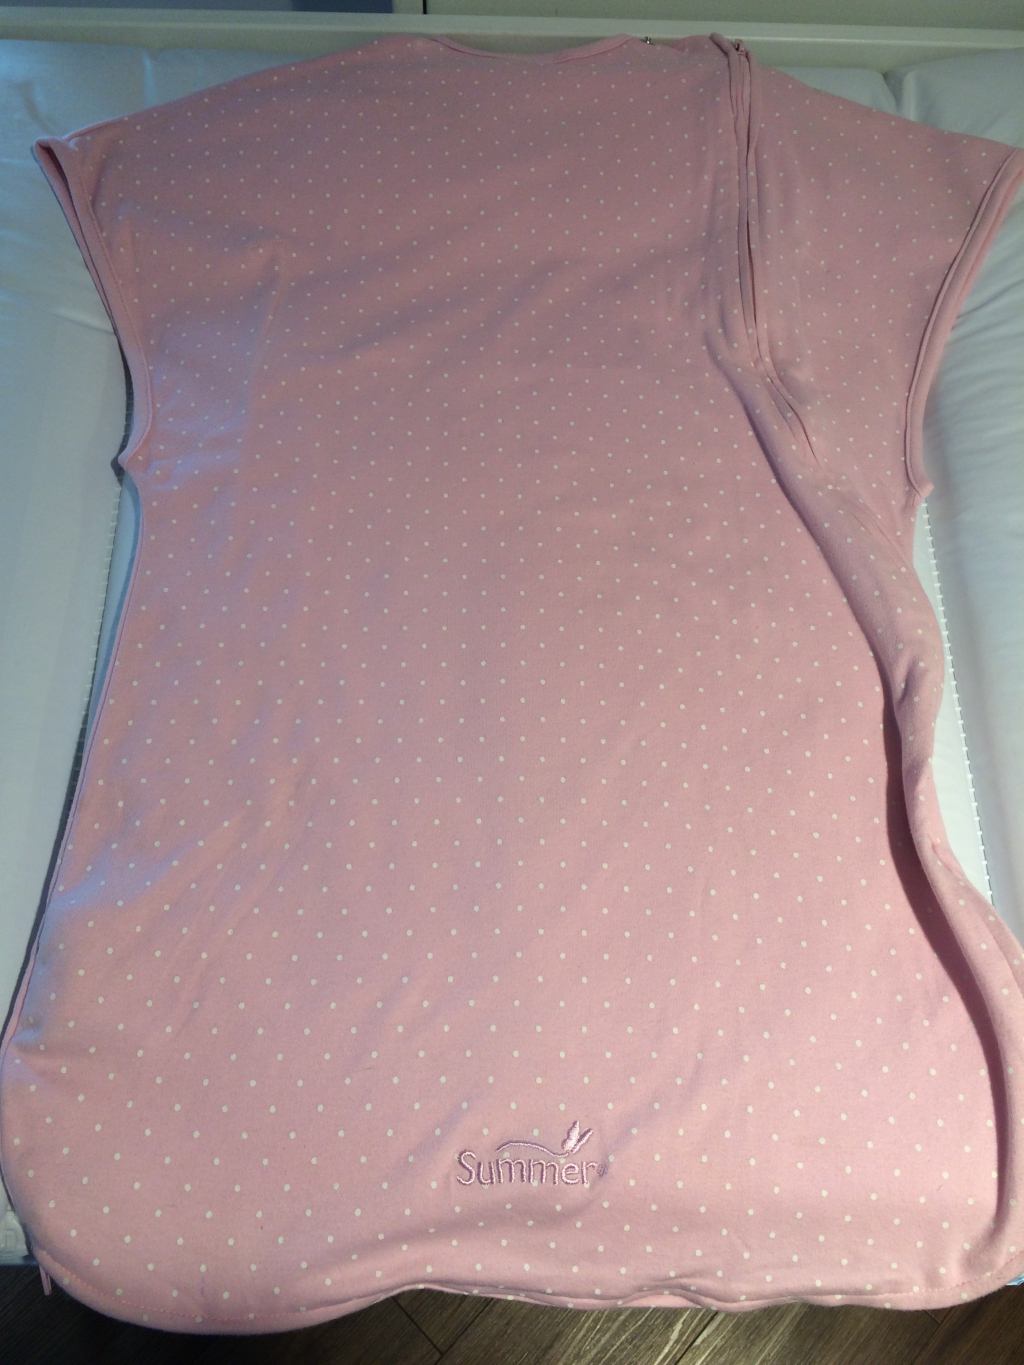 Конверт для пеленания Summer infant SwaddleMe - Самый лучший спальный мешок для малыша!